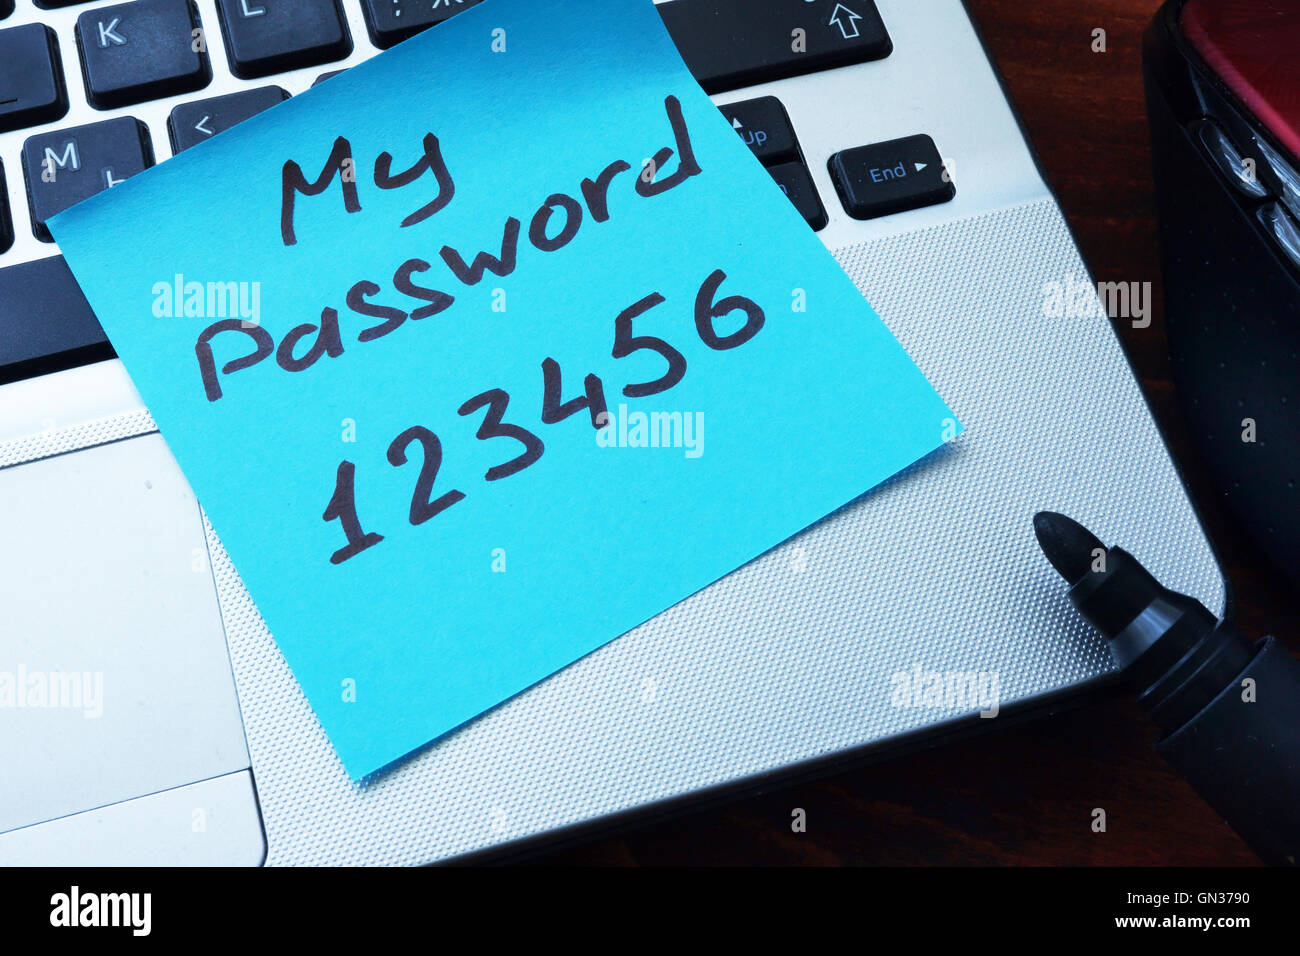 Semplice concetto di password. La mia password 123456 scritta su una carta con un marcatore. Foto Stock